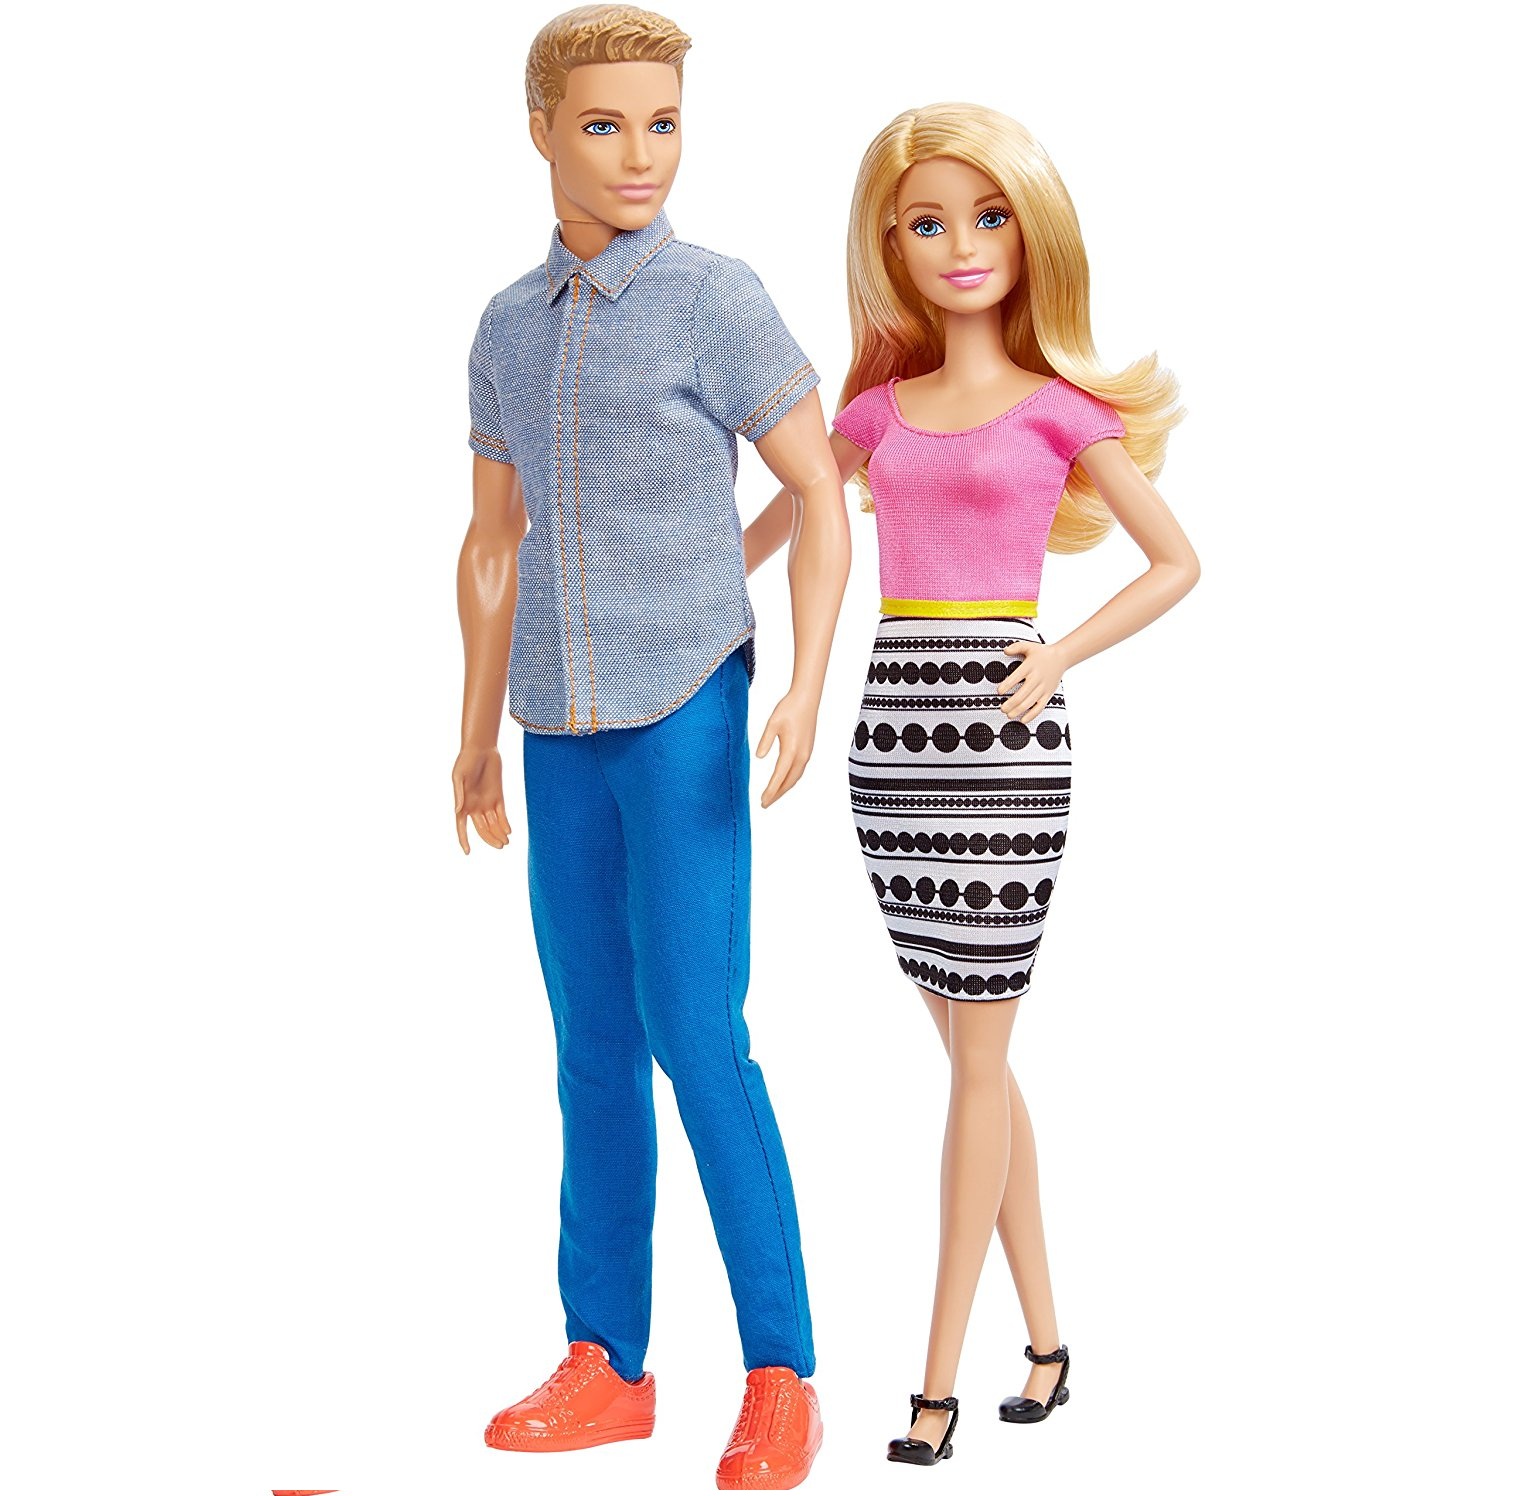 Bộ đồ chơi cặp đôi búp bê Barbie và Ken Doll Barbie and Ken Doll 2-